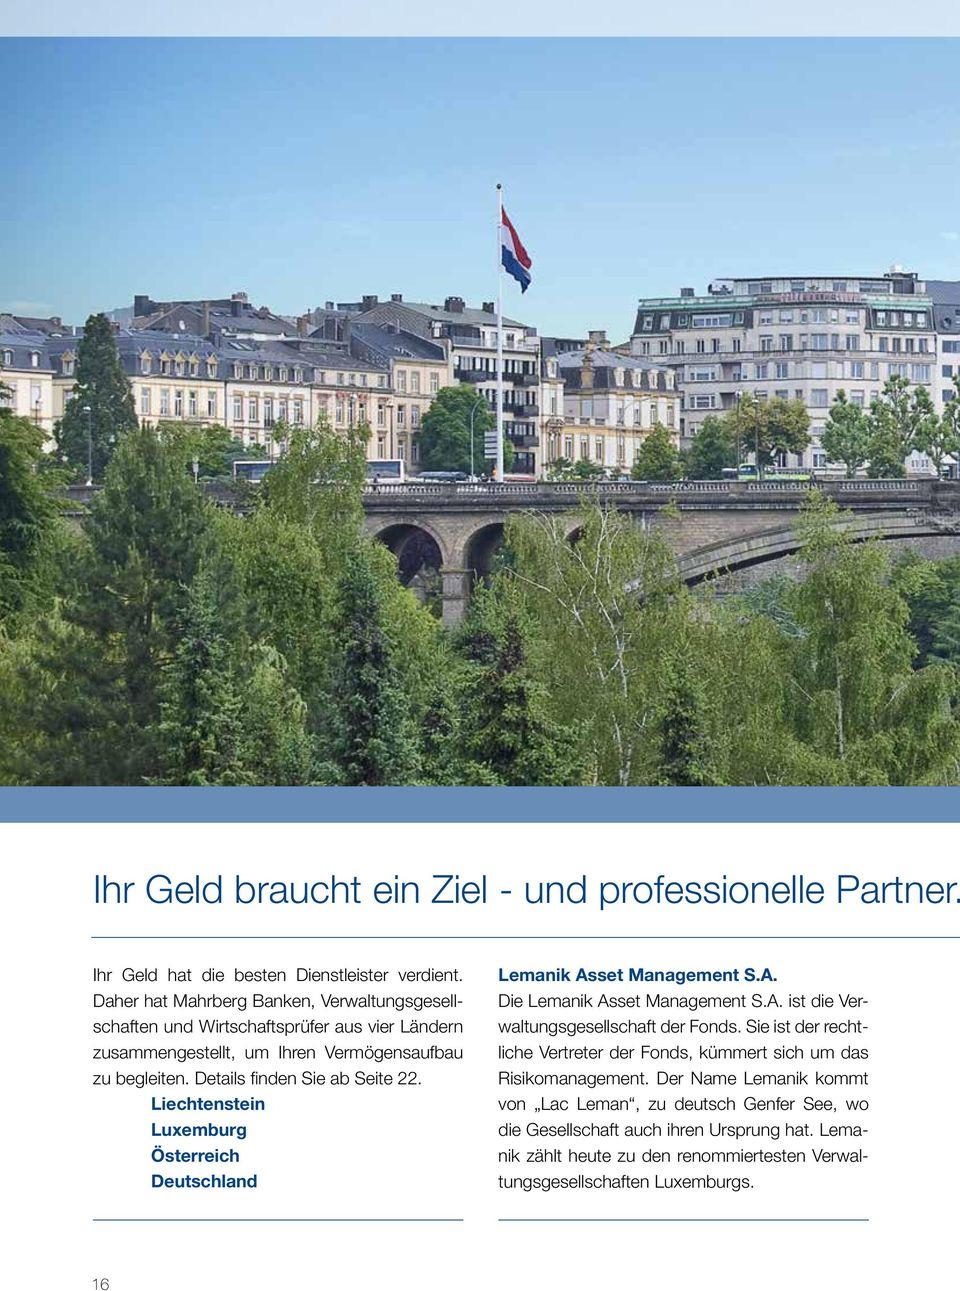 Details finden Sie ab Seite 22. Liechtenstein Luxemburg Österreich Deutschland Lemanik Asset Management S.A. Die Lemanik Asset Management S.A. ist die Verwaltungsgesellschaft der Fonds.